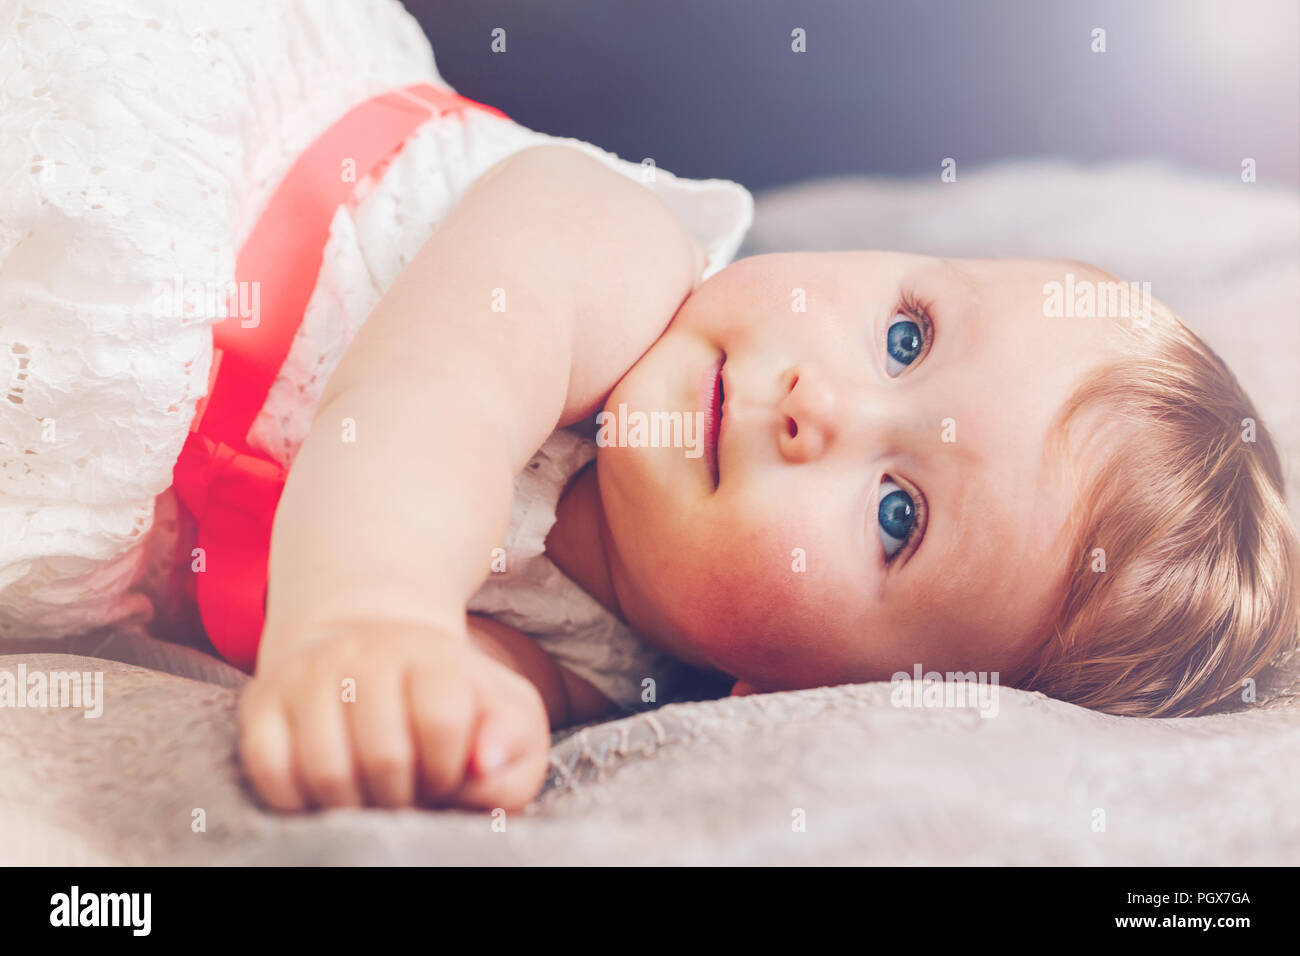 Retrato de cute adorable rubia bebé niña sonriente con ojos azules en vestido blanco con lazo rojo tumbado en la cama busca de soñar, un hada Fotografía de stock -